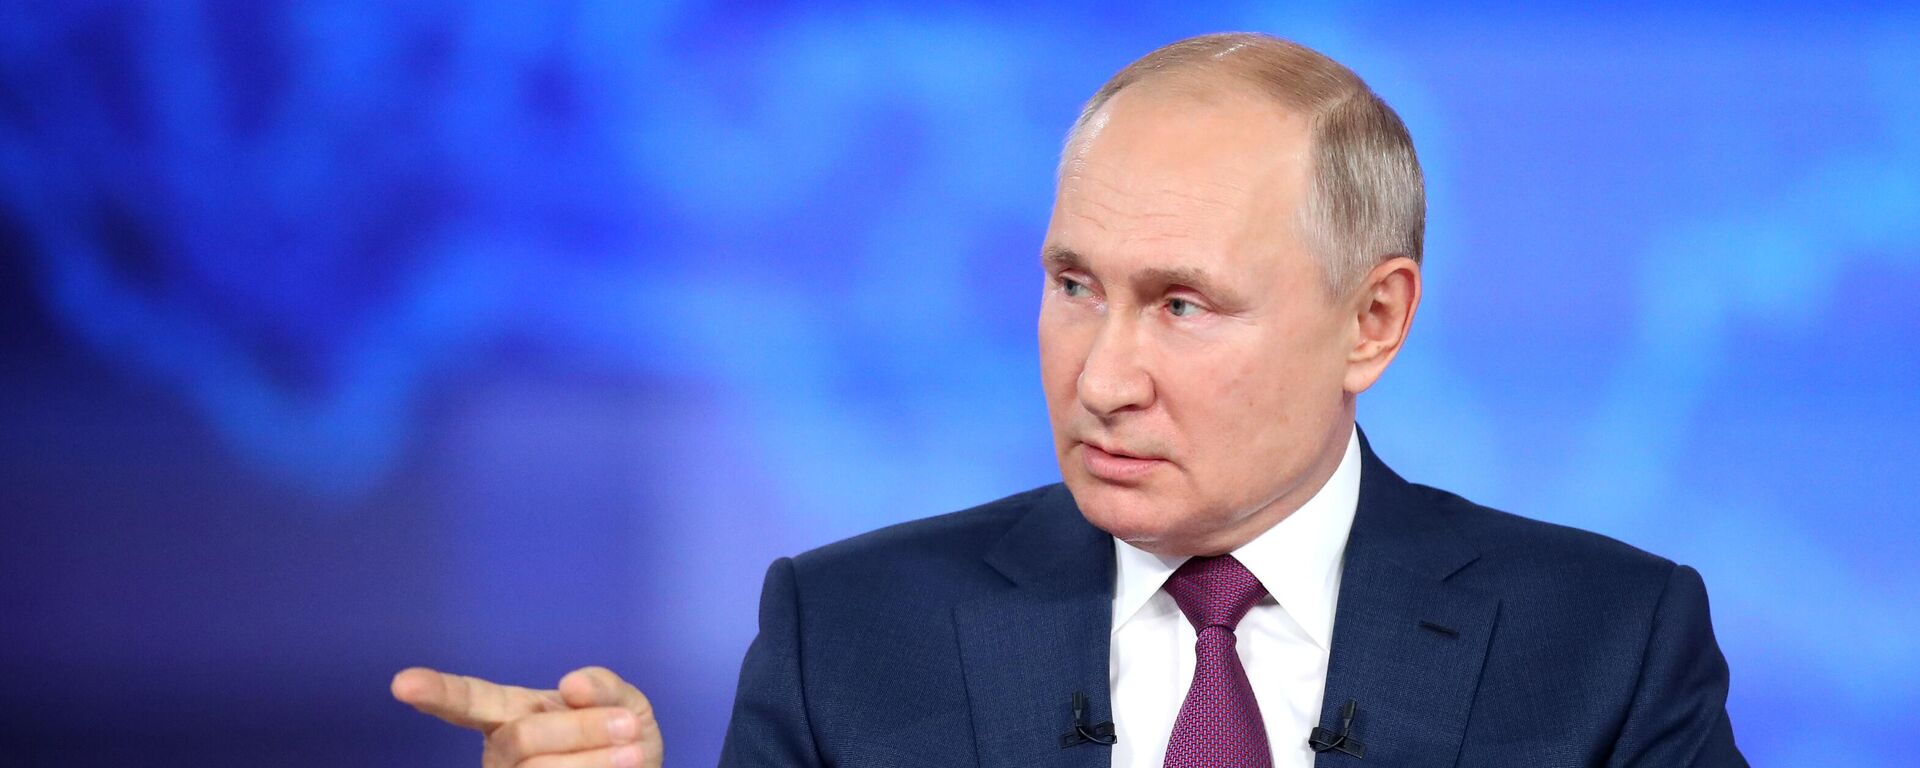 Rusijos prezidentas Vladimiras Putinas atsako į rusų klausimus kasmetinėje specialioje programoje Tiesioginė linija su Vladimiru Putinu - Sputnik Lietuva, 1920, 30.06.2021